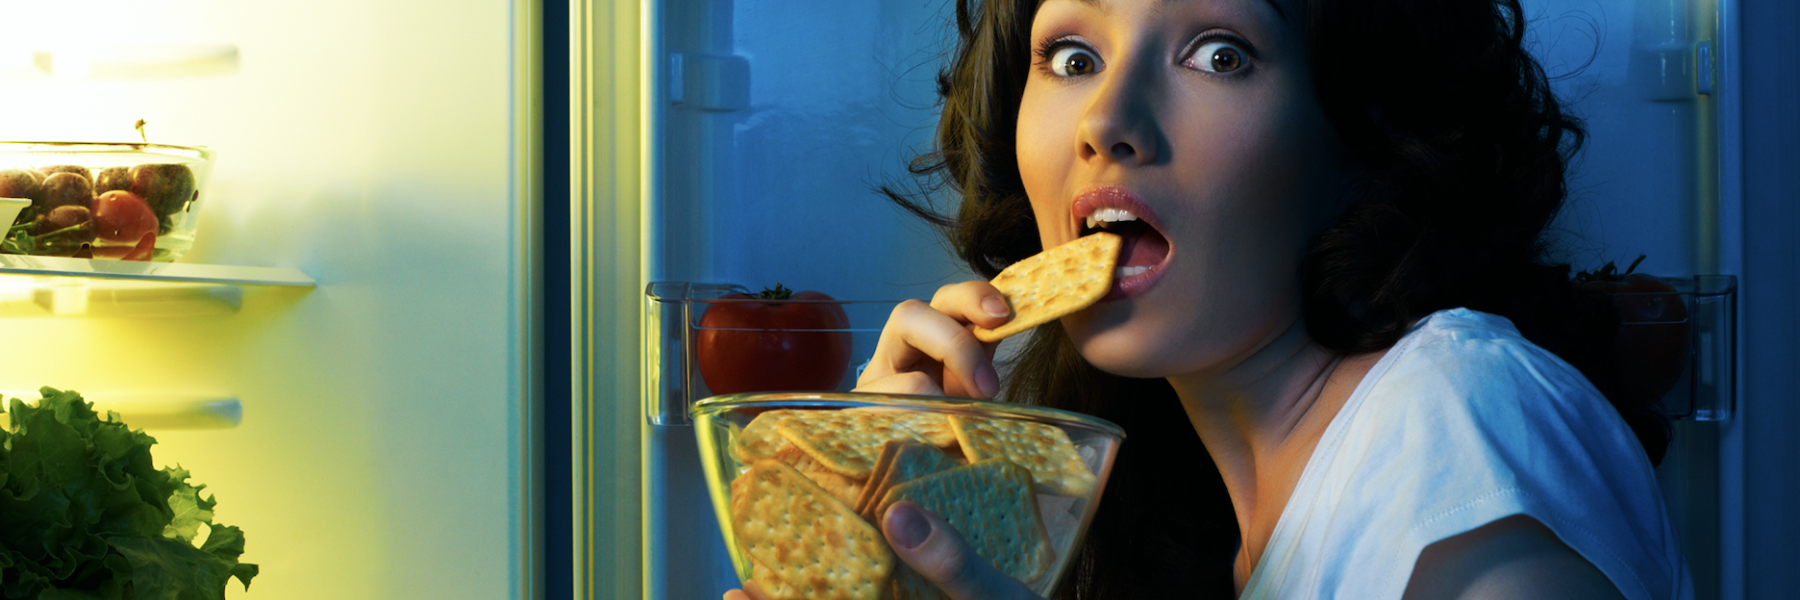 كيف يؤثر هرمون الجوع عليكِ؟! 